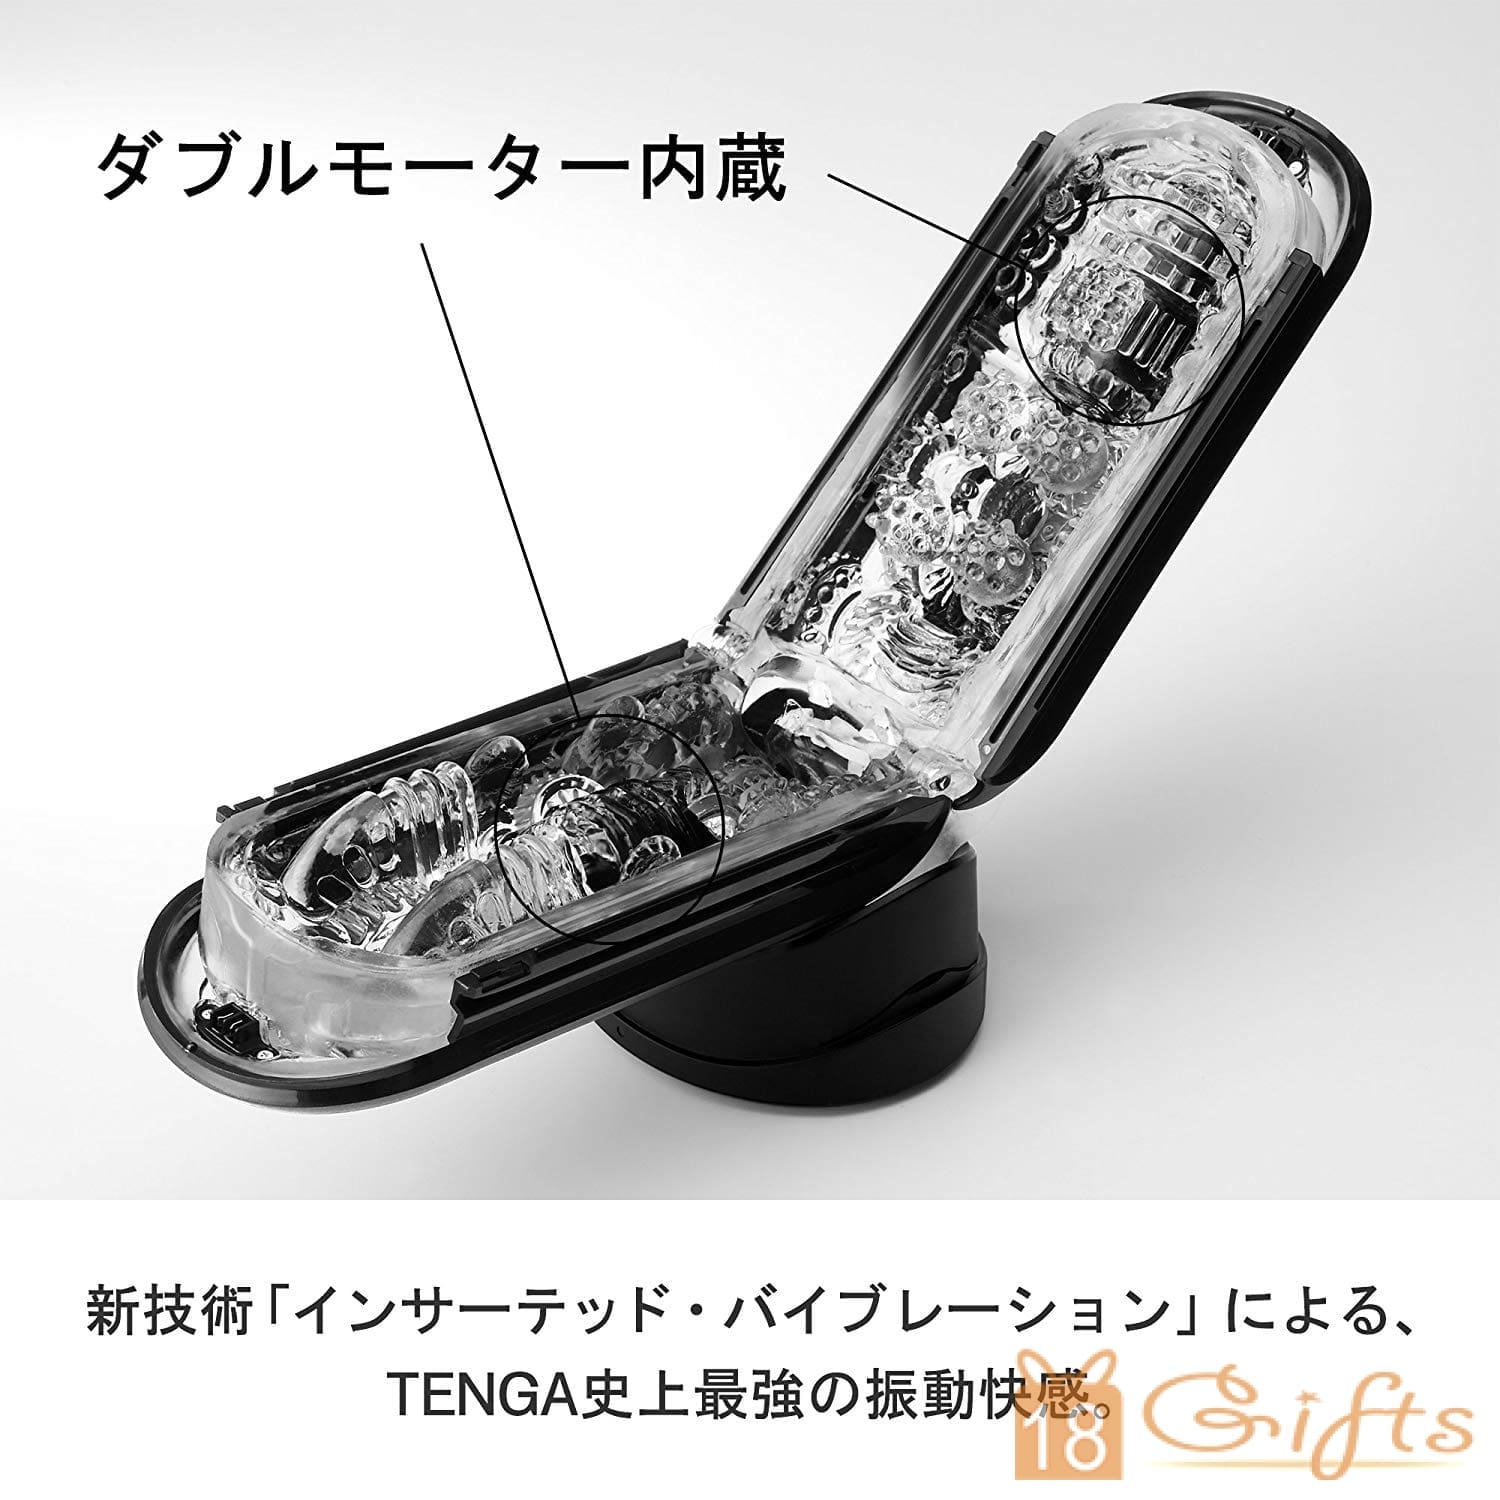 Tenga Flip 0 (Zero) ELECTRONIC VIBRATION BLACK